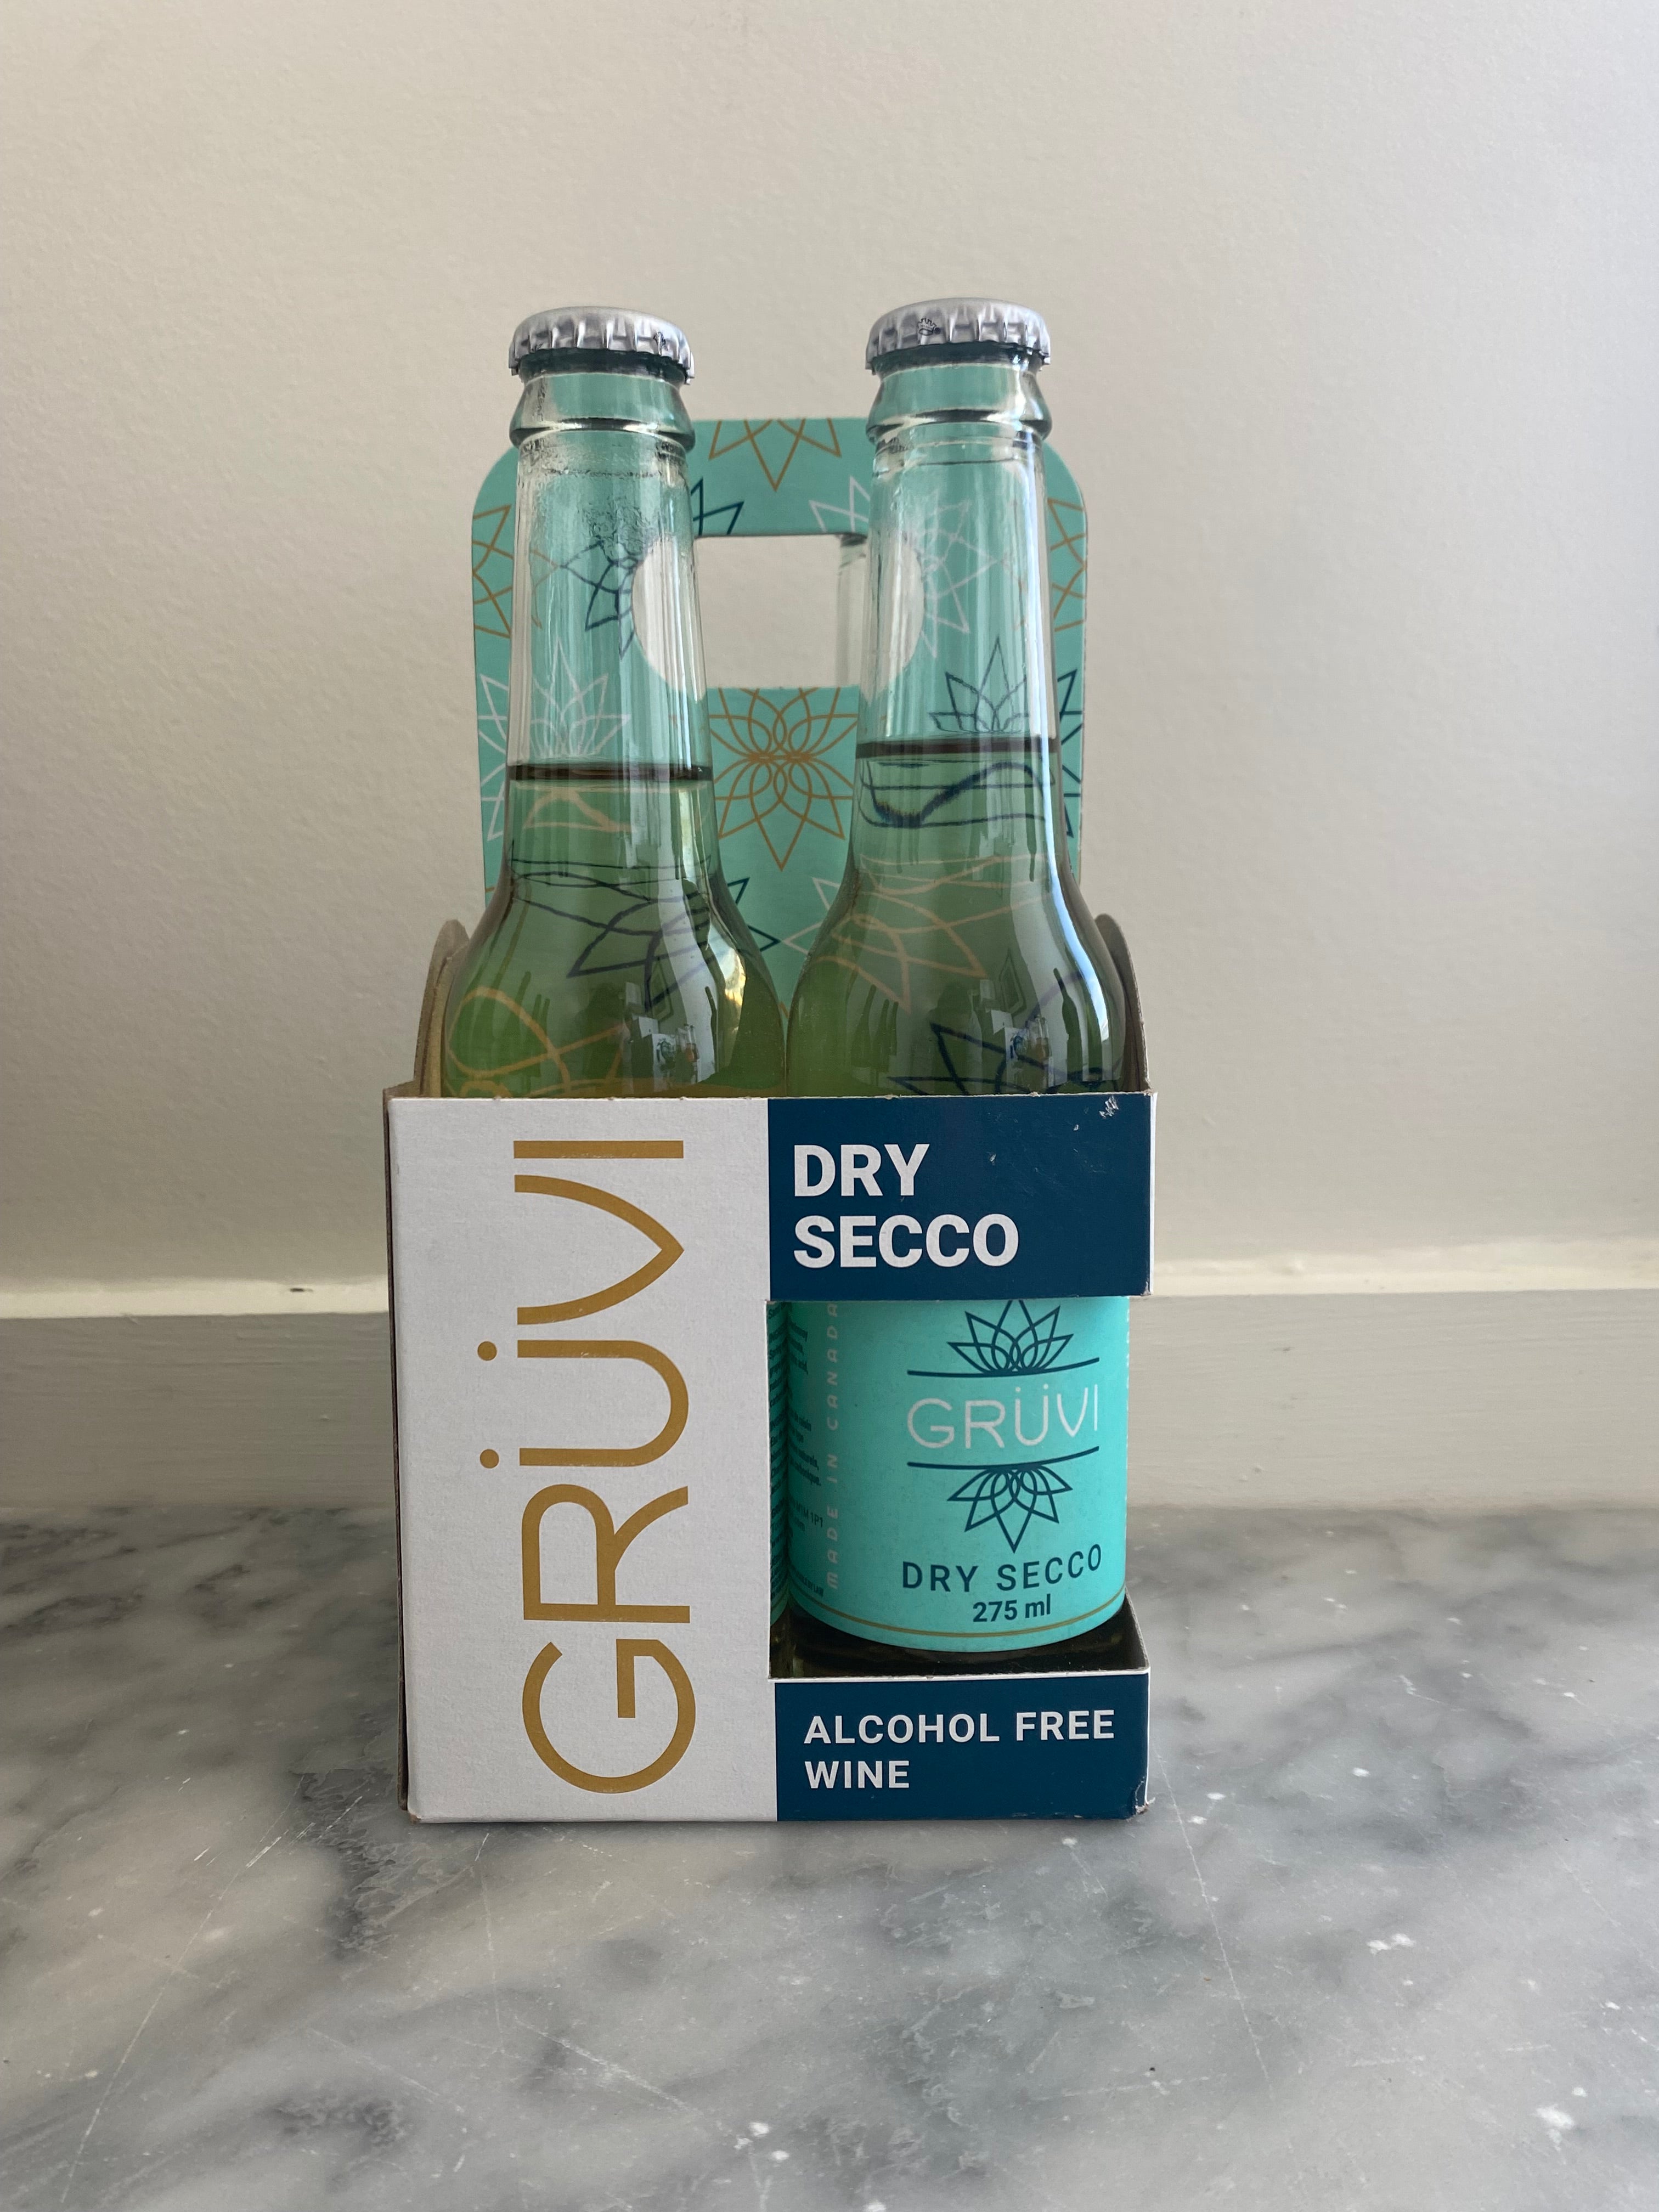 Grüvi Non-Alcoholic Dry Secco